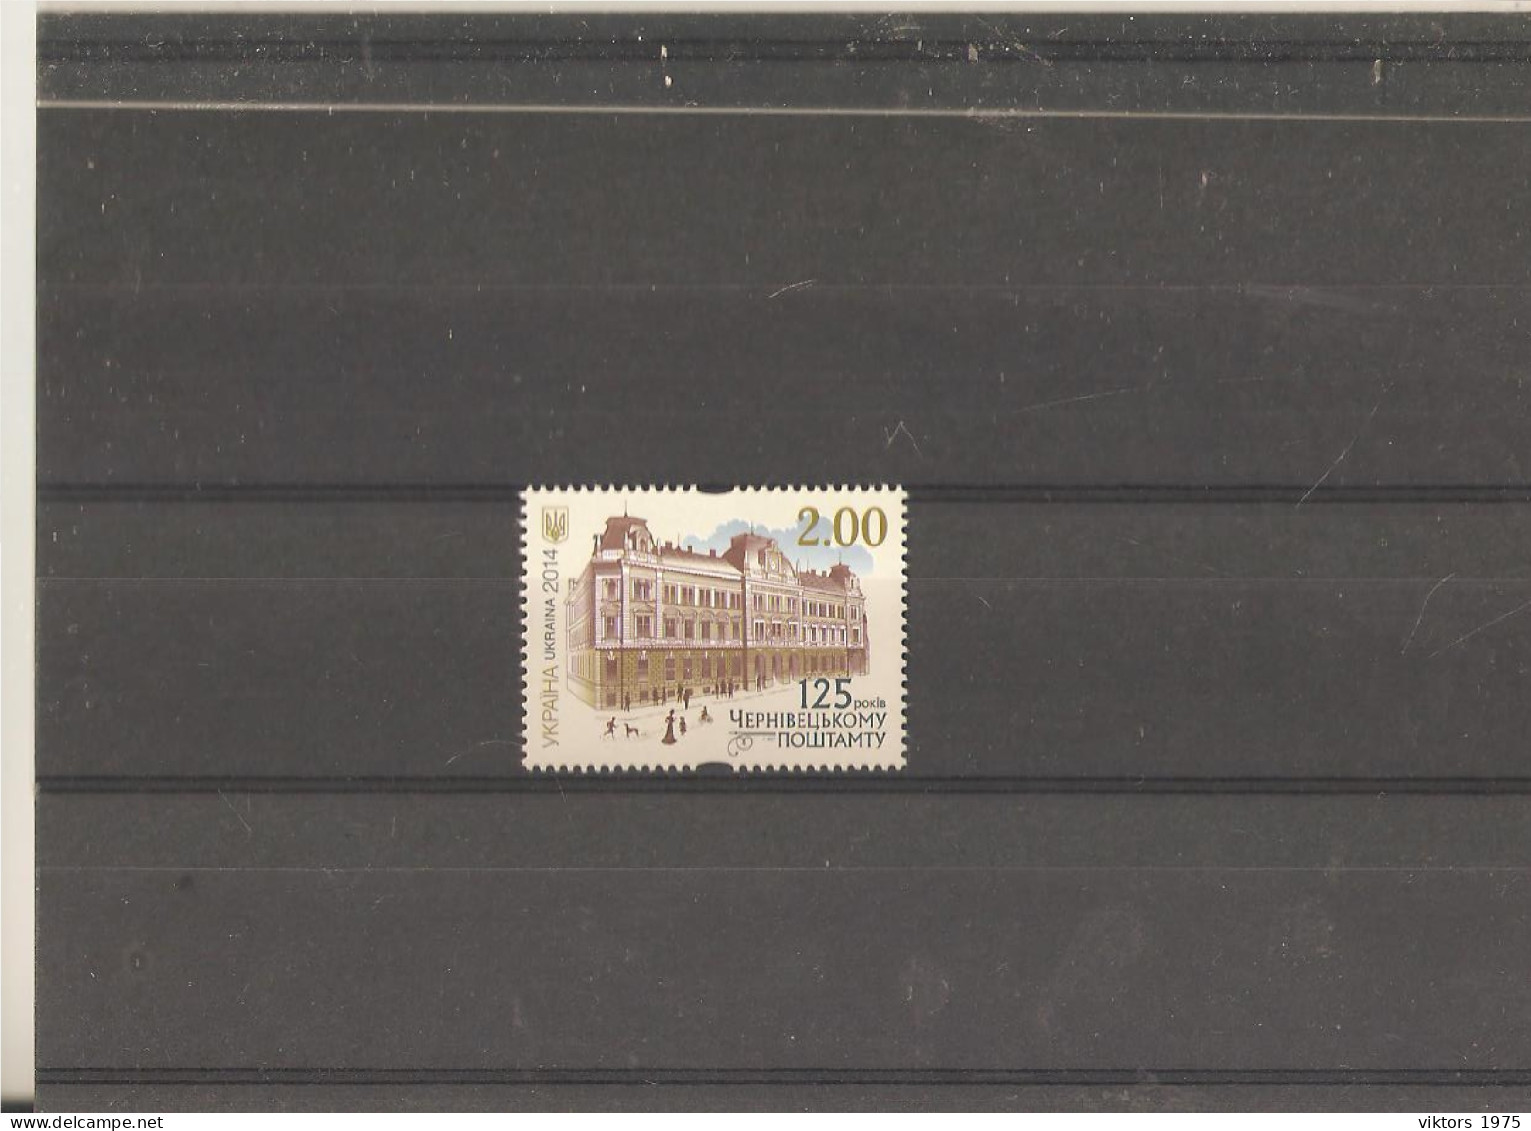 MNH Stamp Nr.1448 In MICHEL Catalog - Ukraine